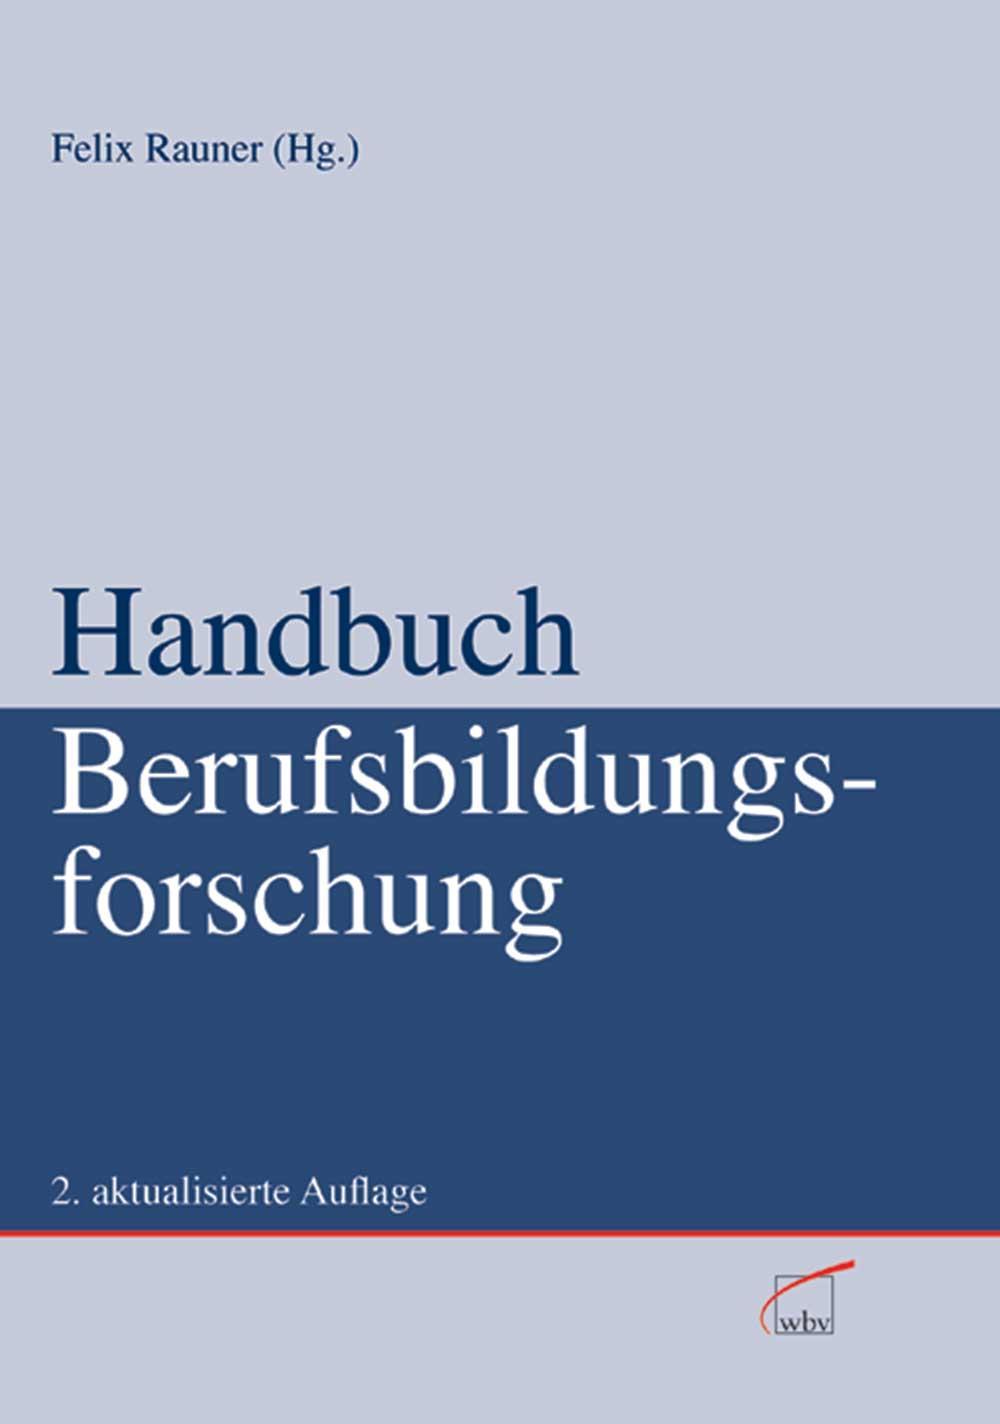 Handbuch Berufsbildungsforschung 2. aktualisierte Auflage